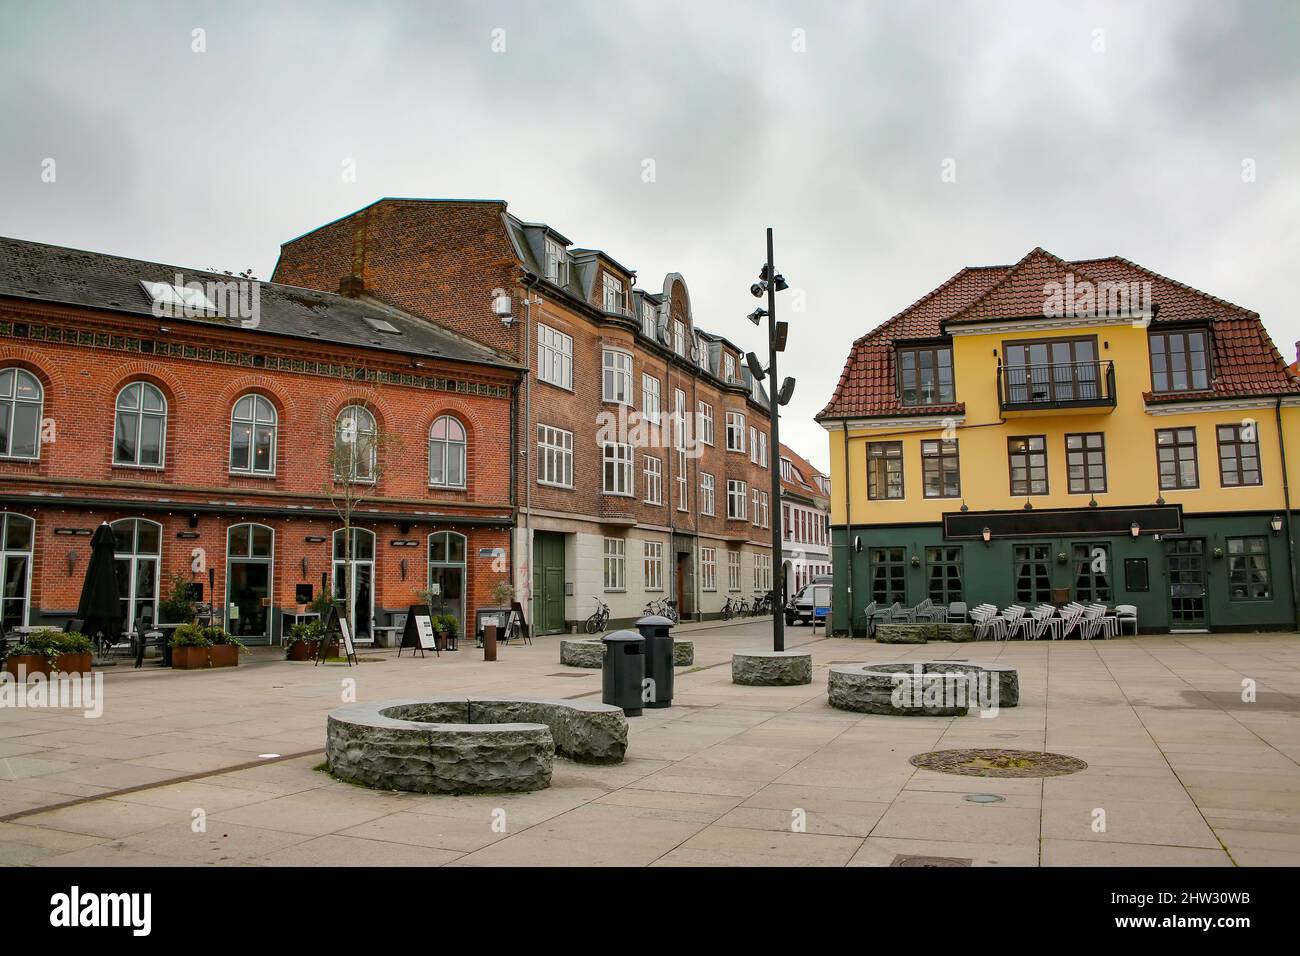 Edifici storici che includono negozi, bar e ristoranti che circondano la piazza Toldbod Plads, situata nel cuore di Aalborg, Danimarca. Foto Stock